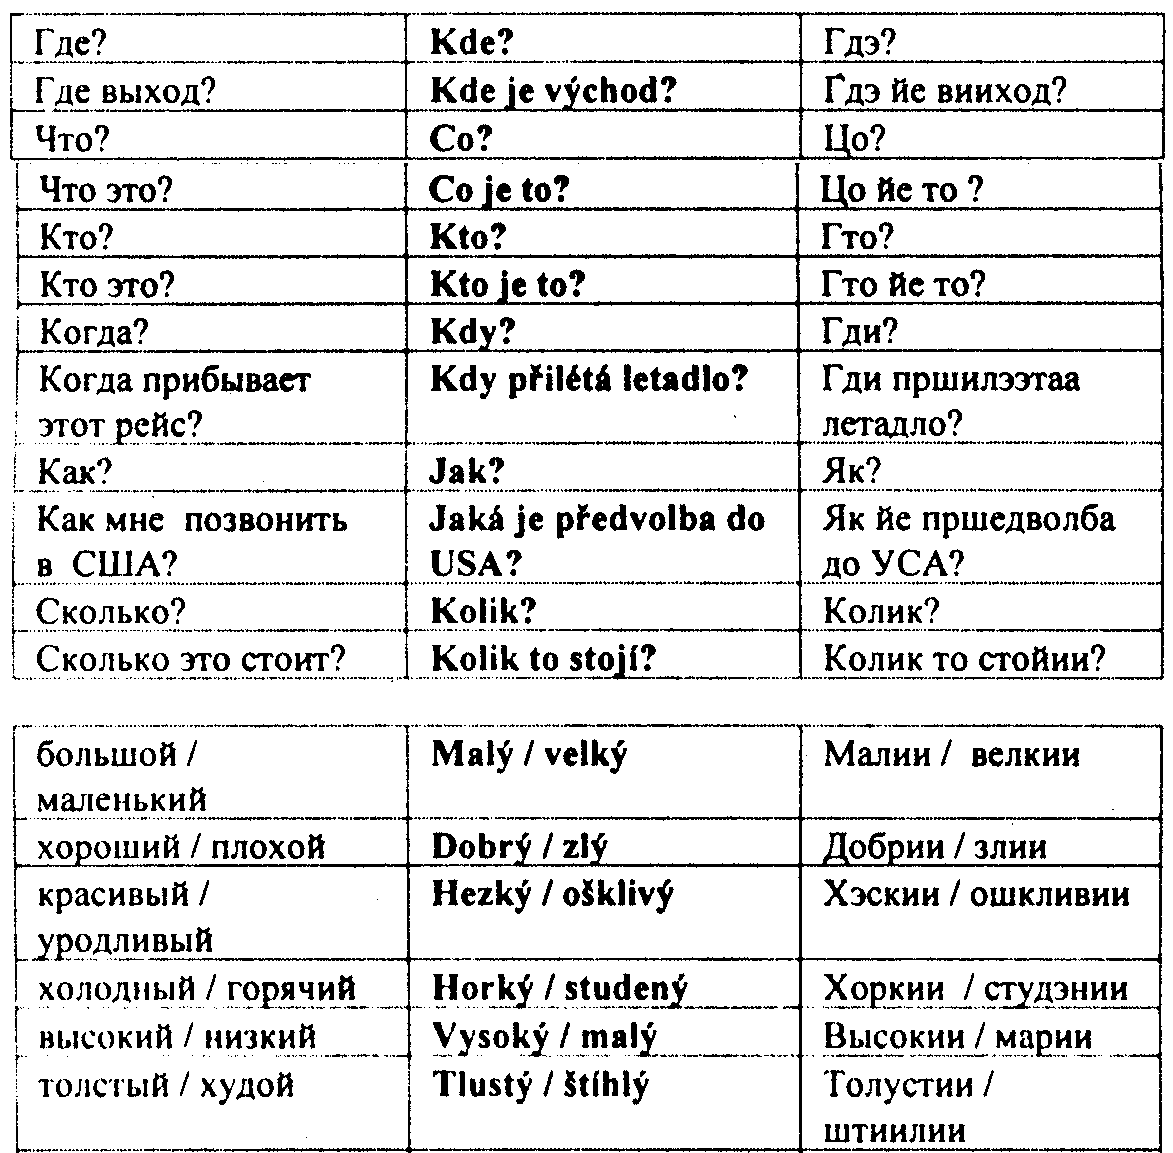 Польские слова в русском